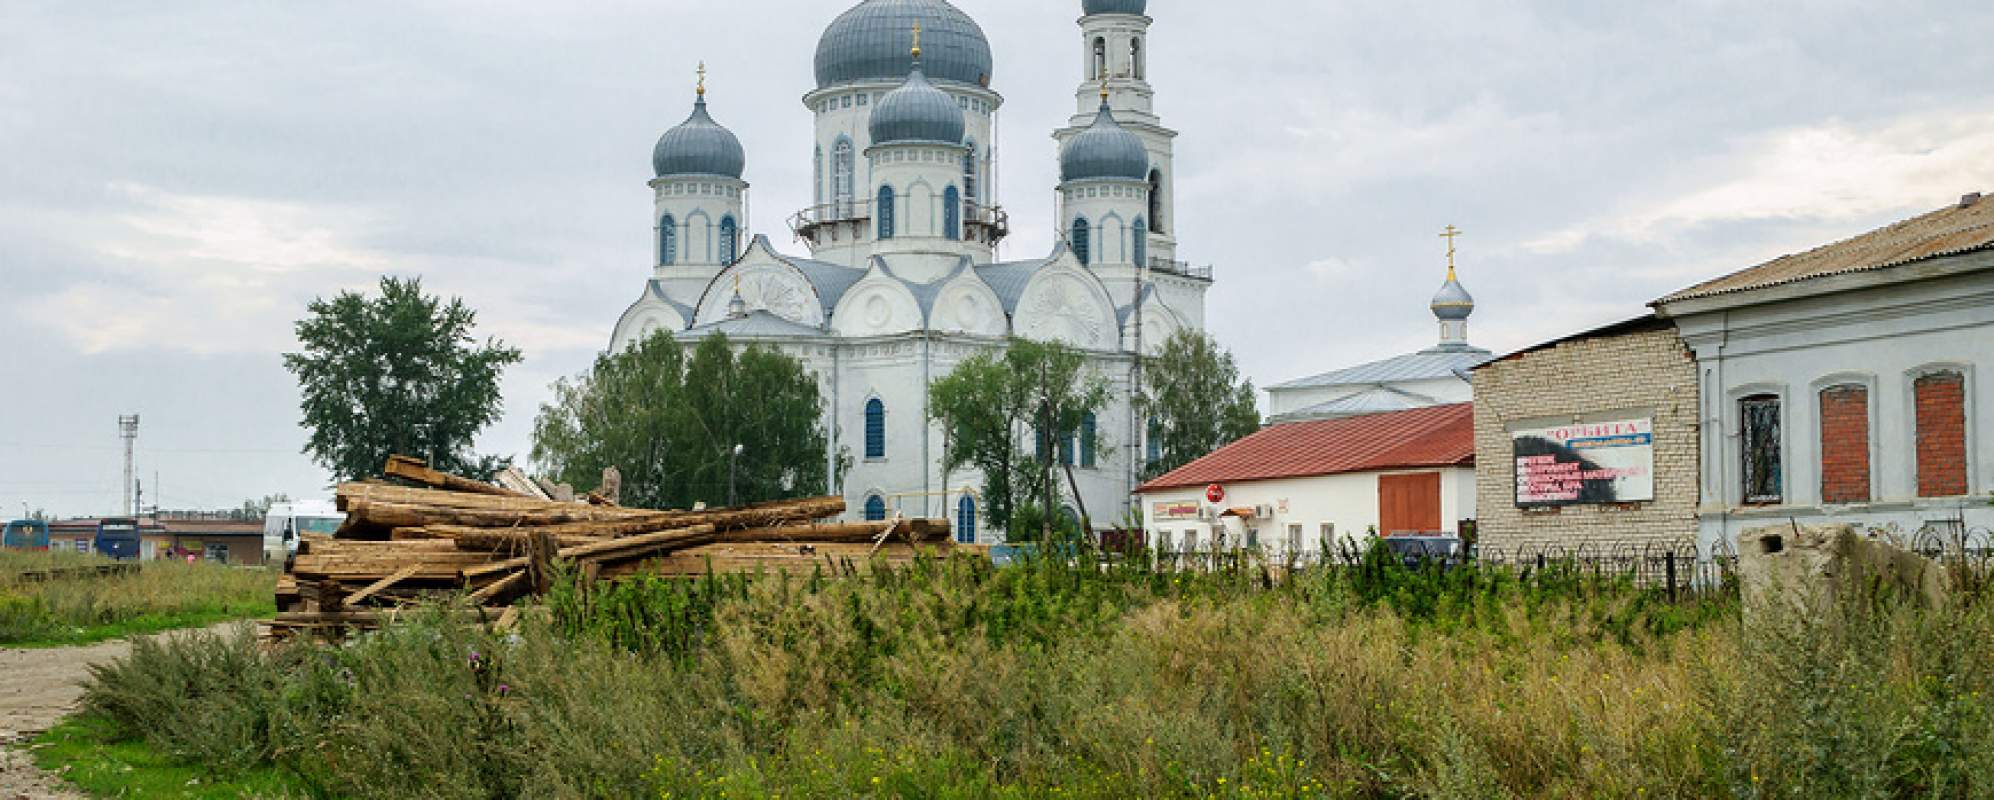 Фотографии храма Вознесенская церковь